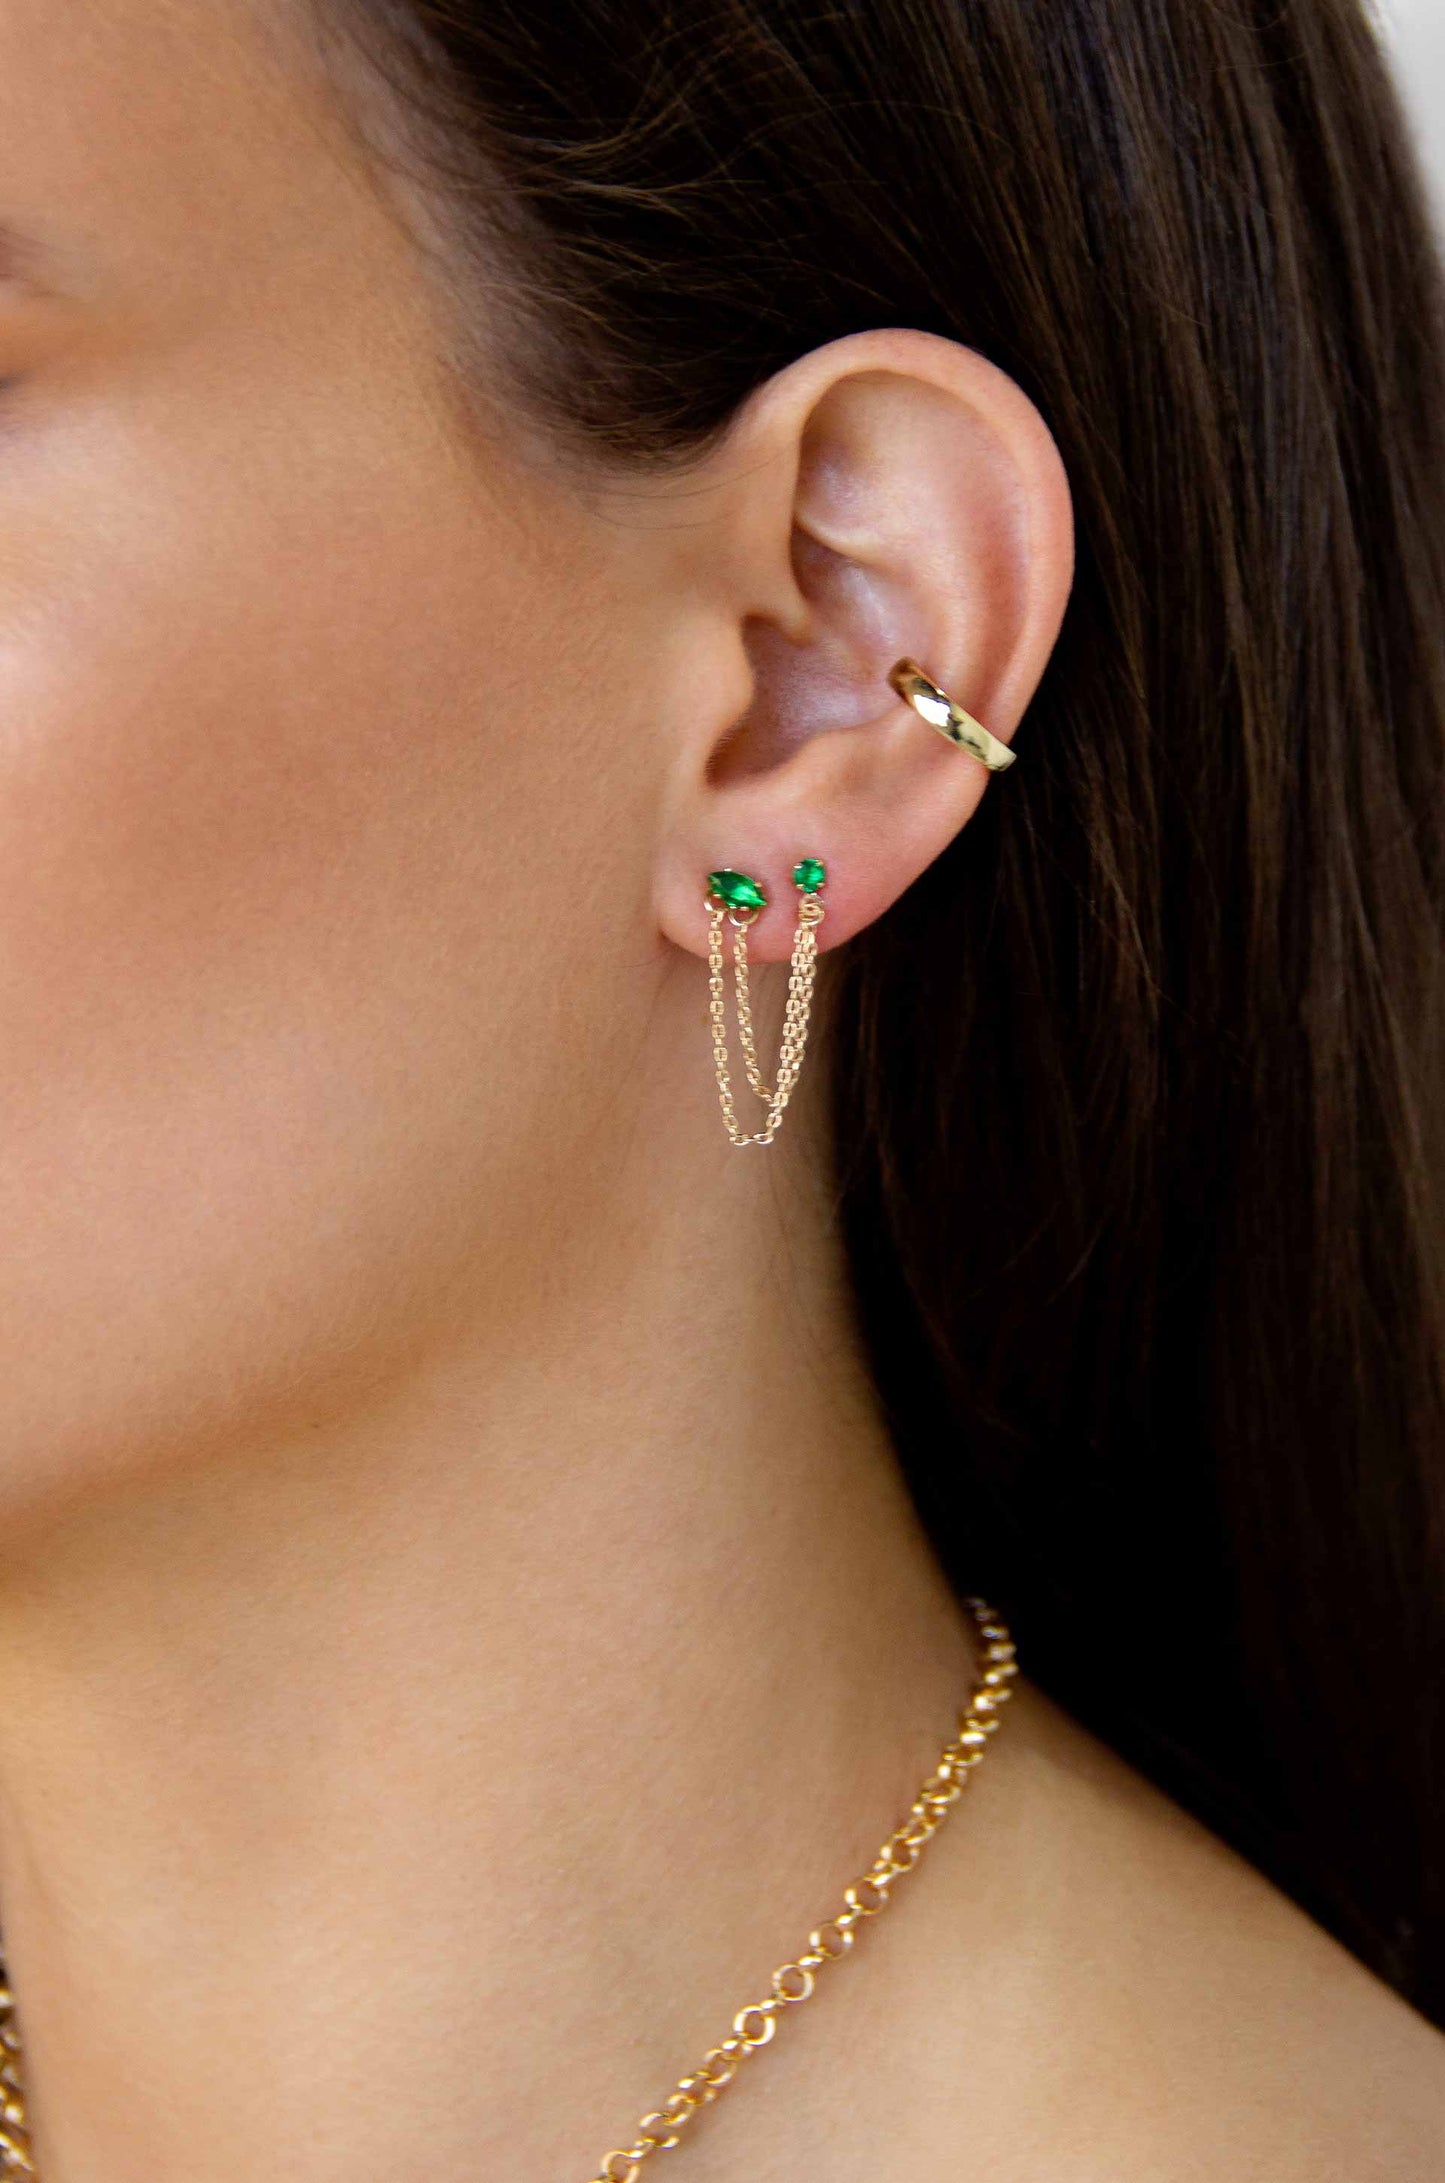 Double Piercing Chain Dangle Earrings in green on model